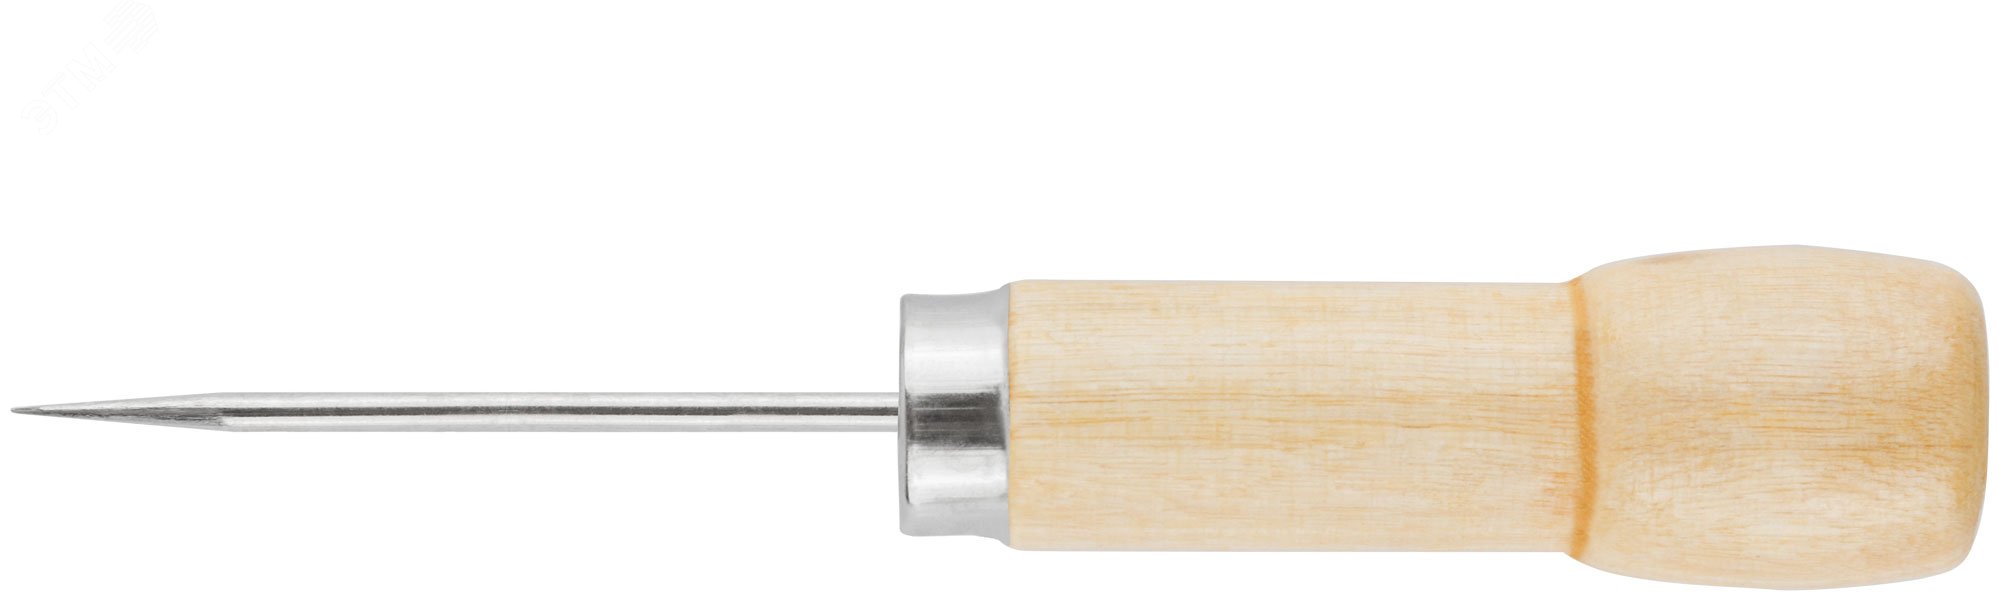 Шило, деревянная ручка 60/130 х 2.5 мм 67410 FIT - превью